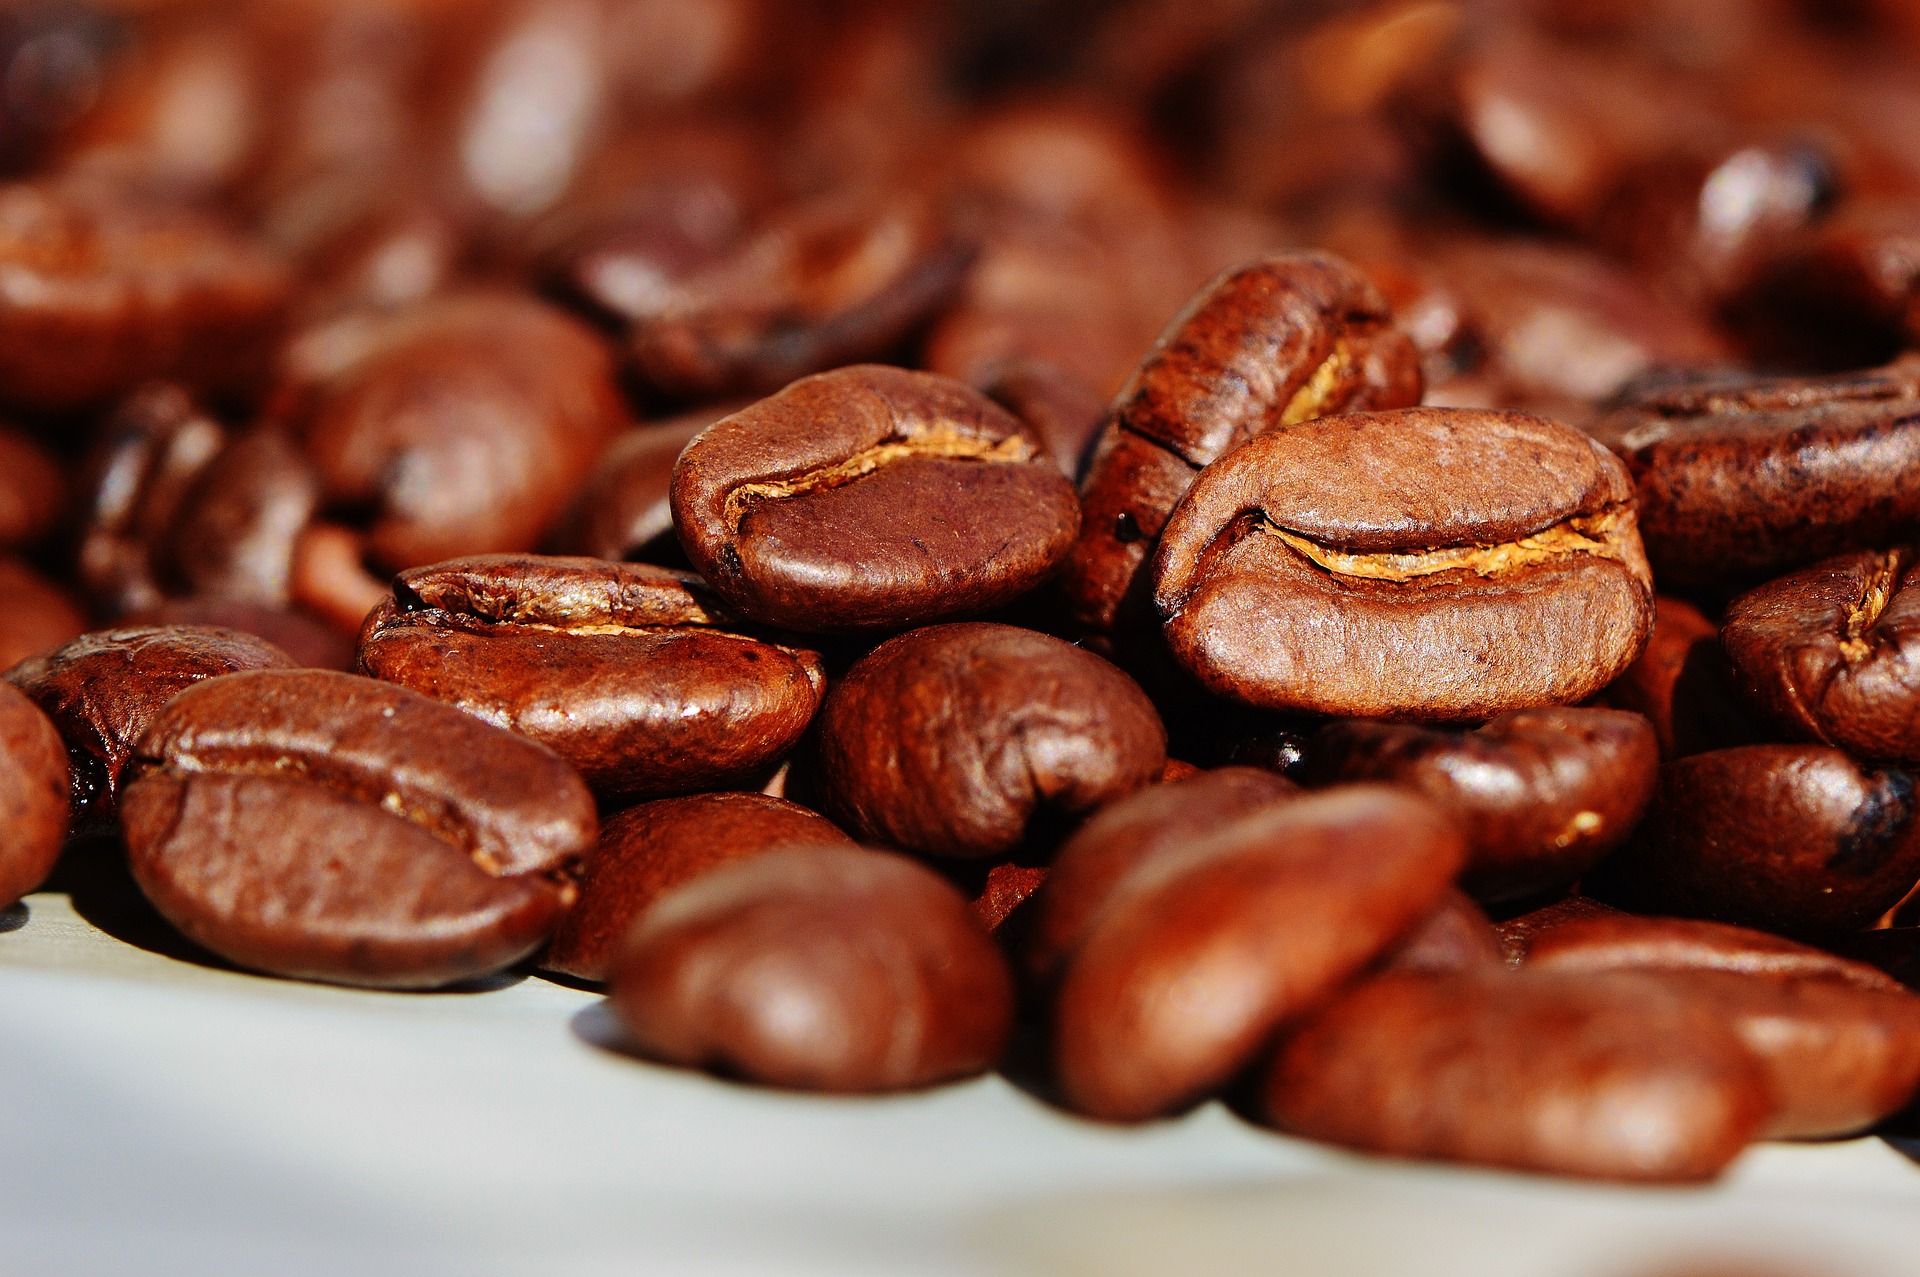 Świeże kawy mielone – jak wybrać najlepszą i jak przechowywać?